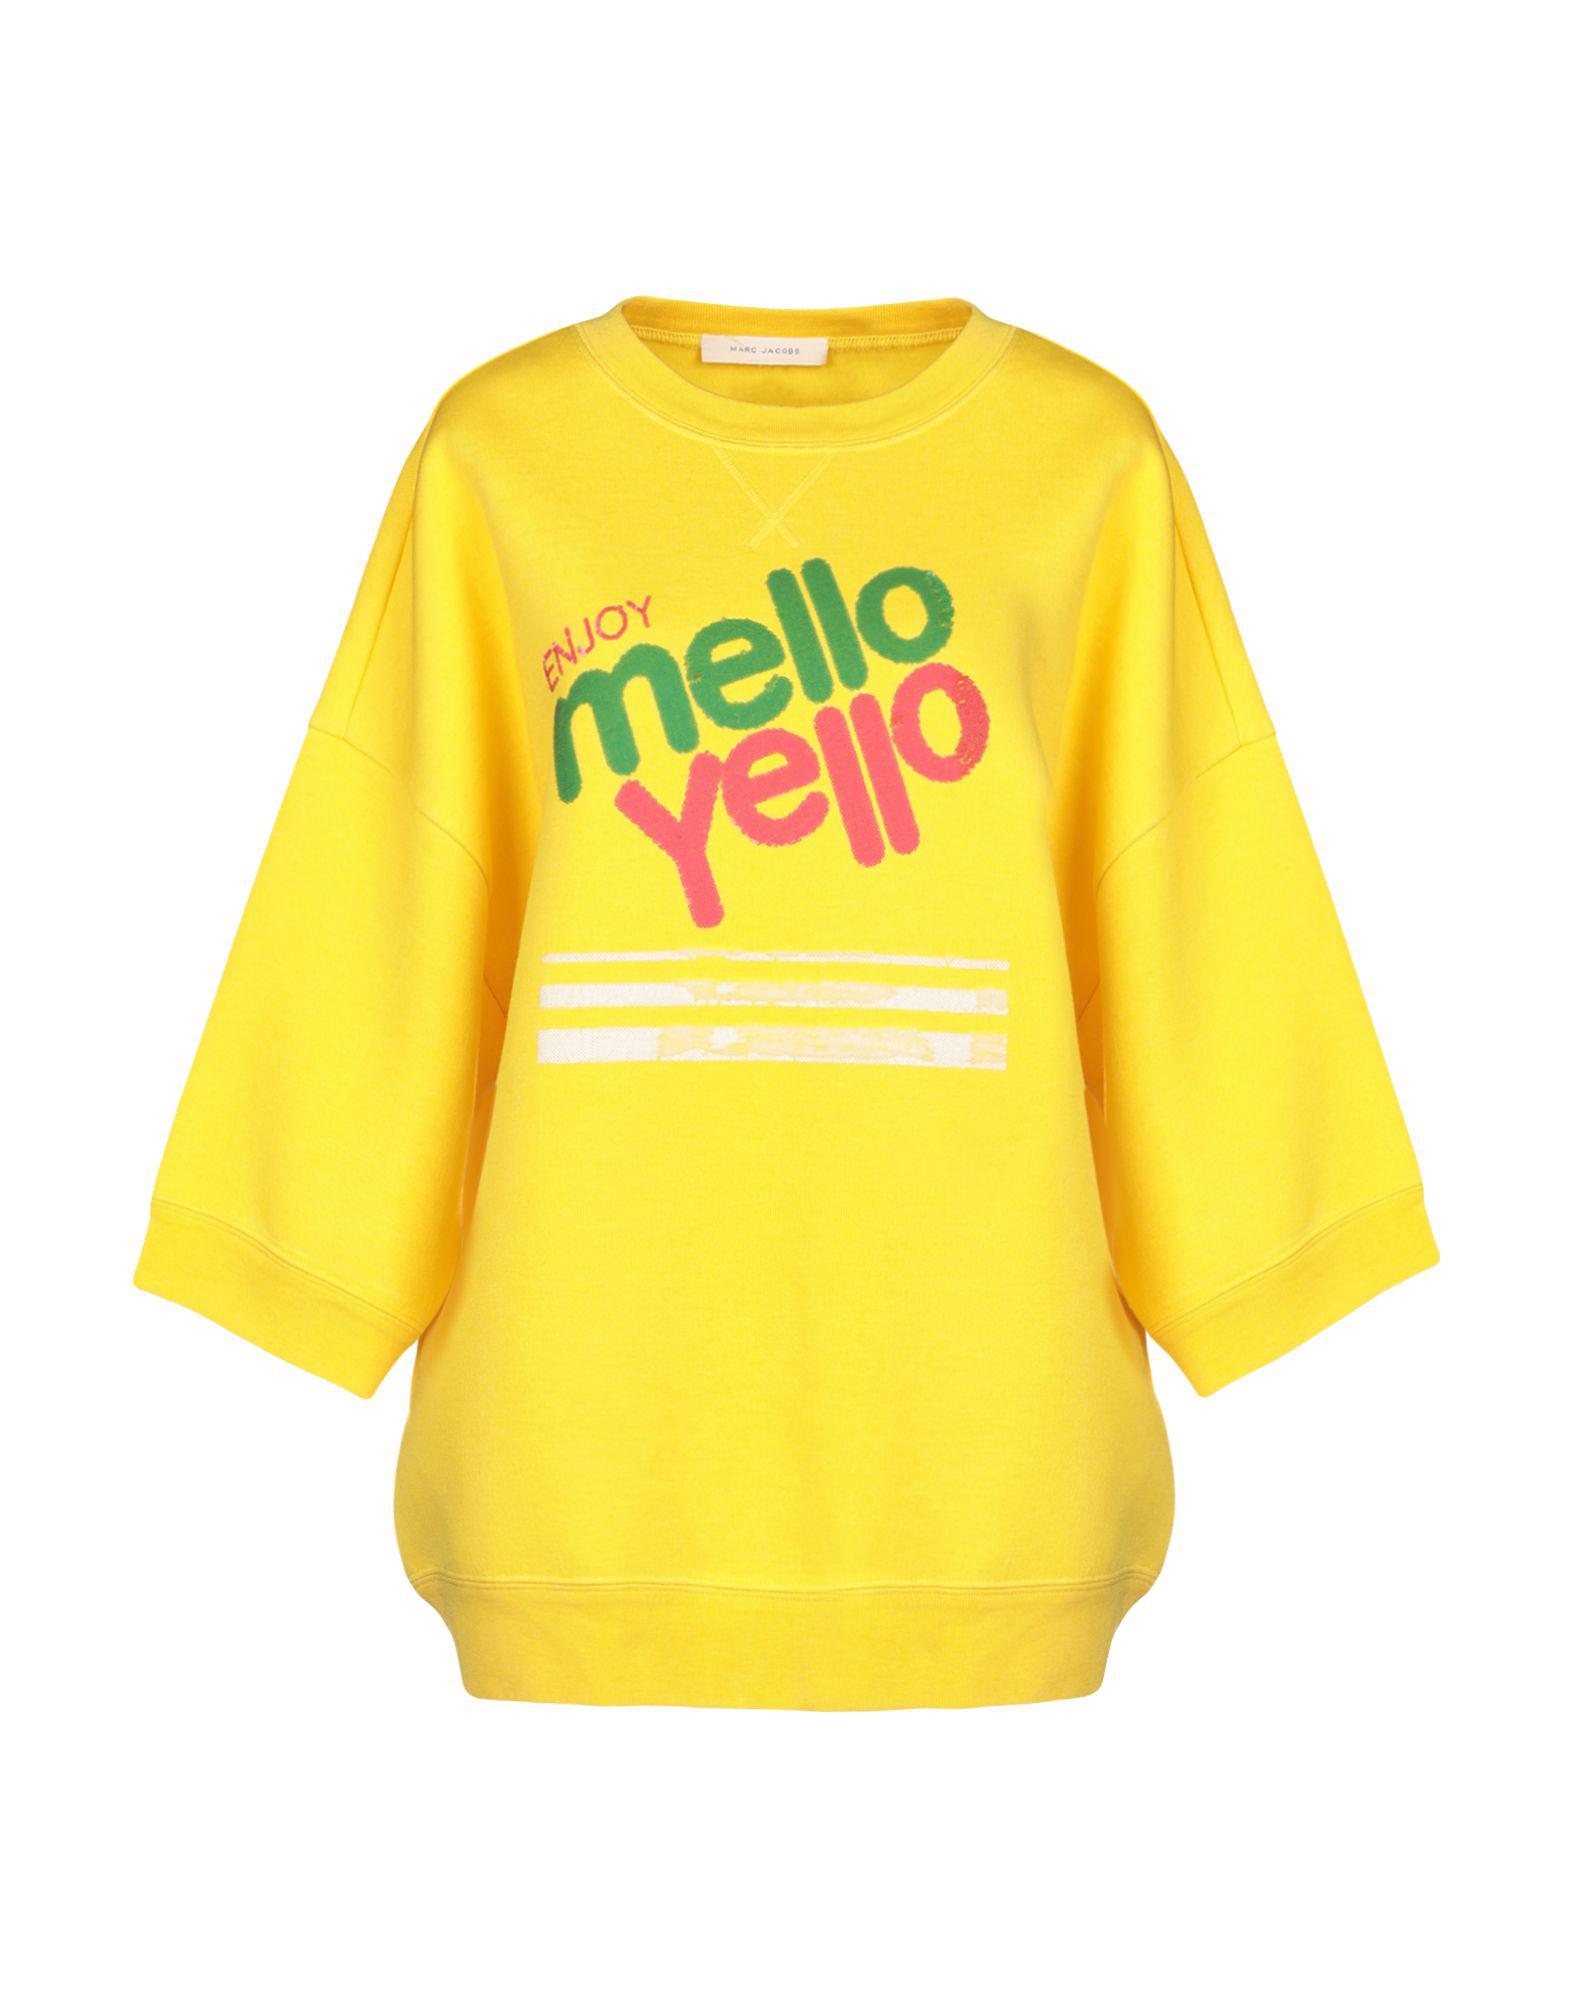 Mello Yello Jump Suit